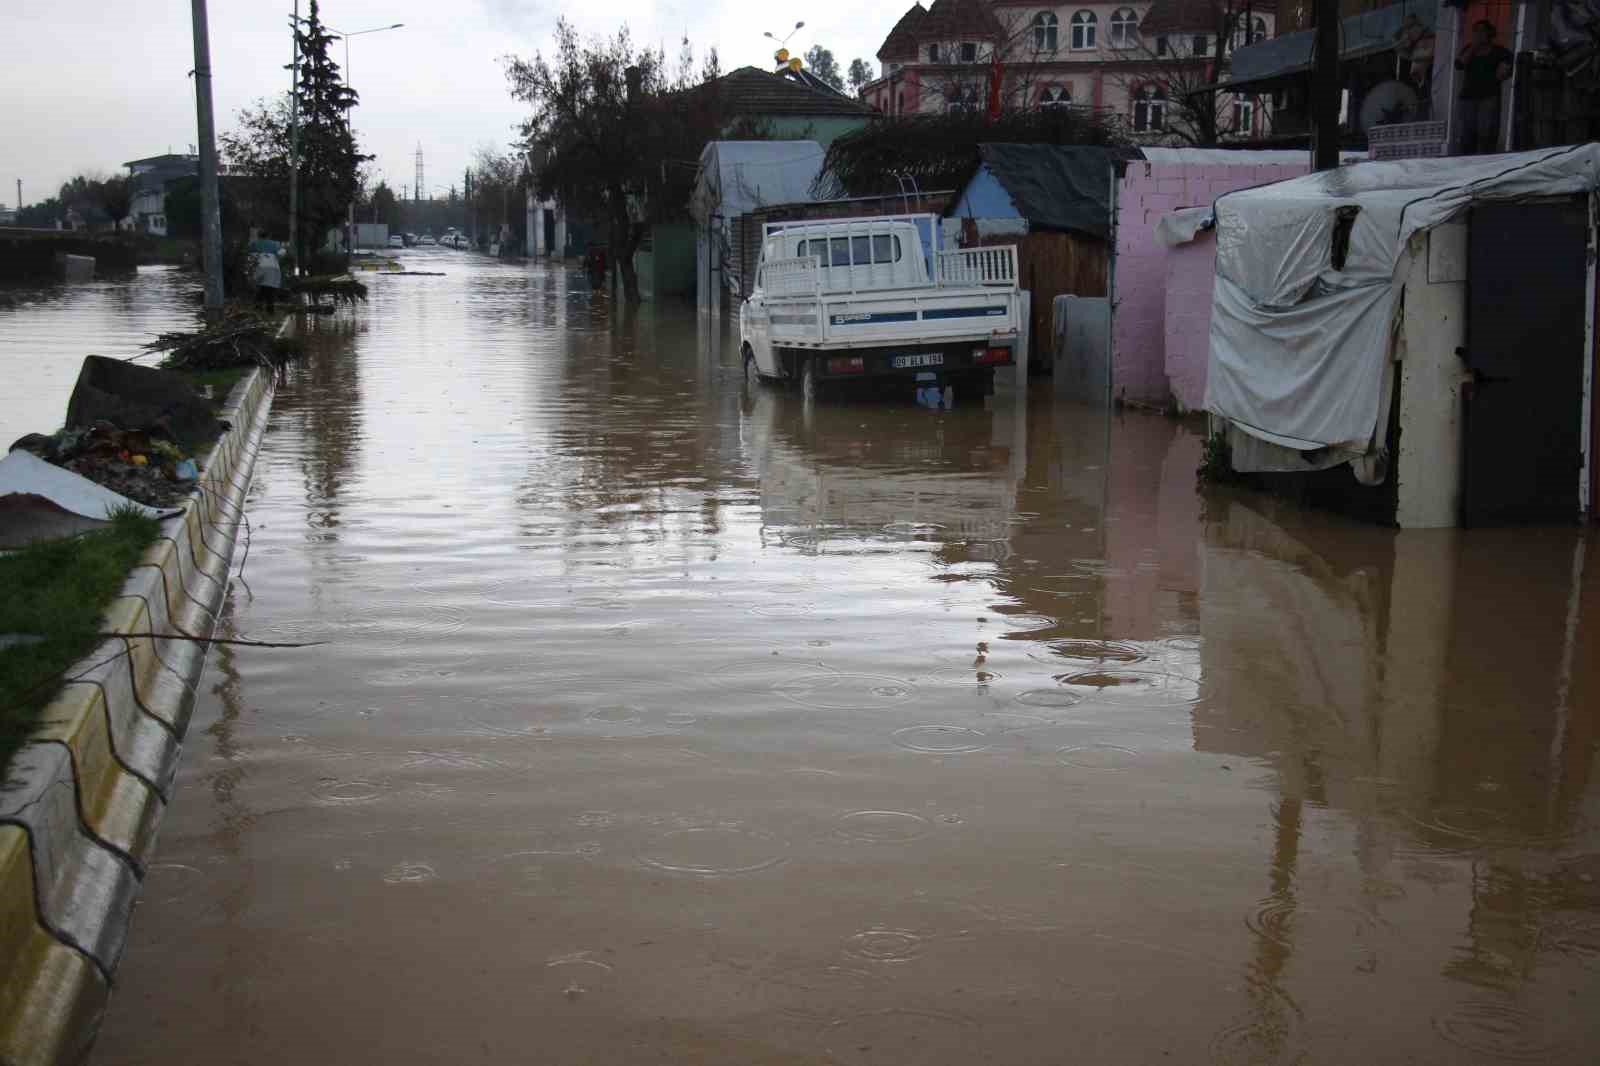 Aydın Ilıcabaşı’nda evler sular altında kaldı, vatandaşlar acil yardım bekliyor